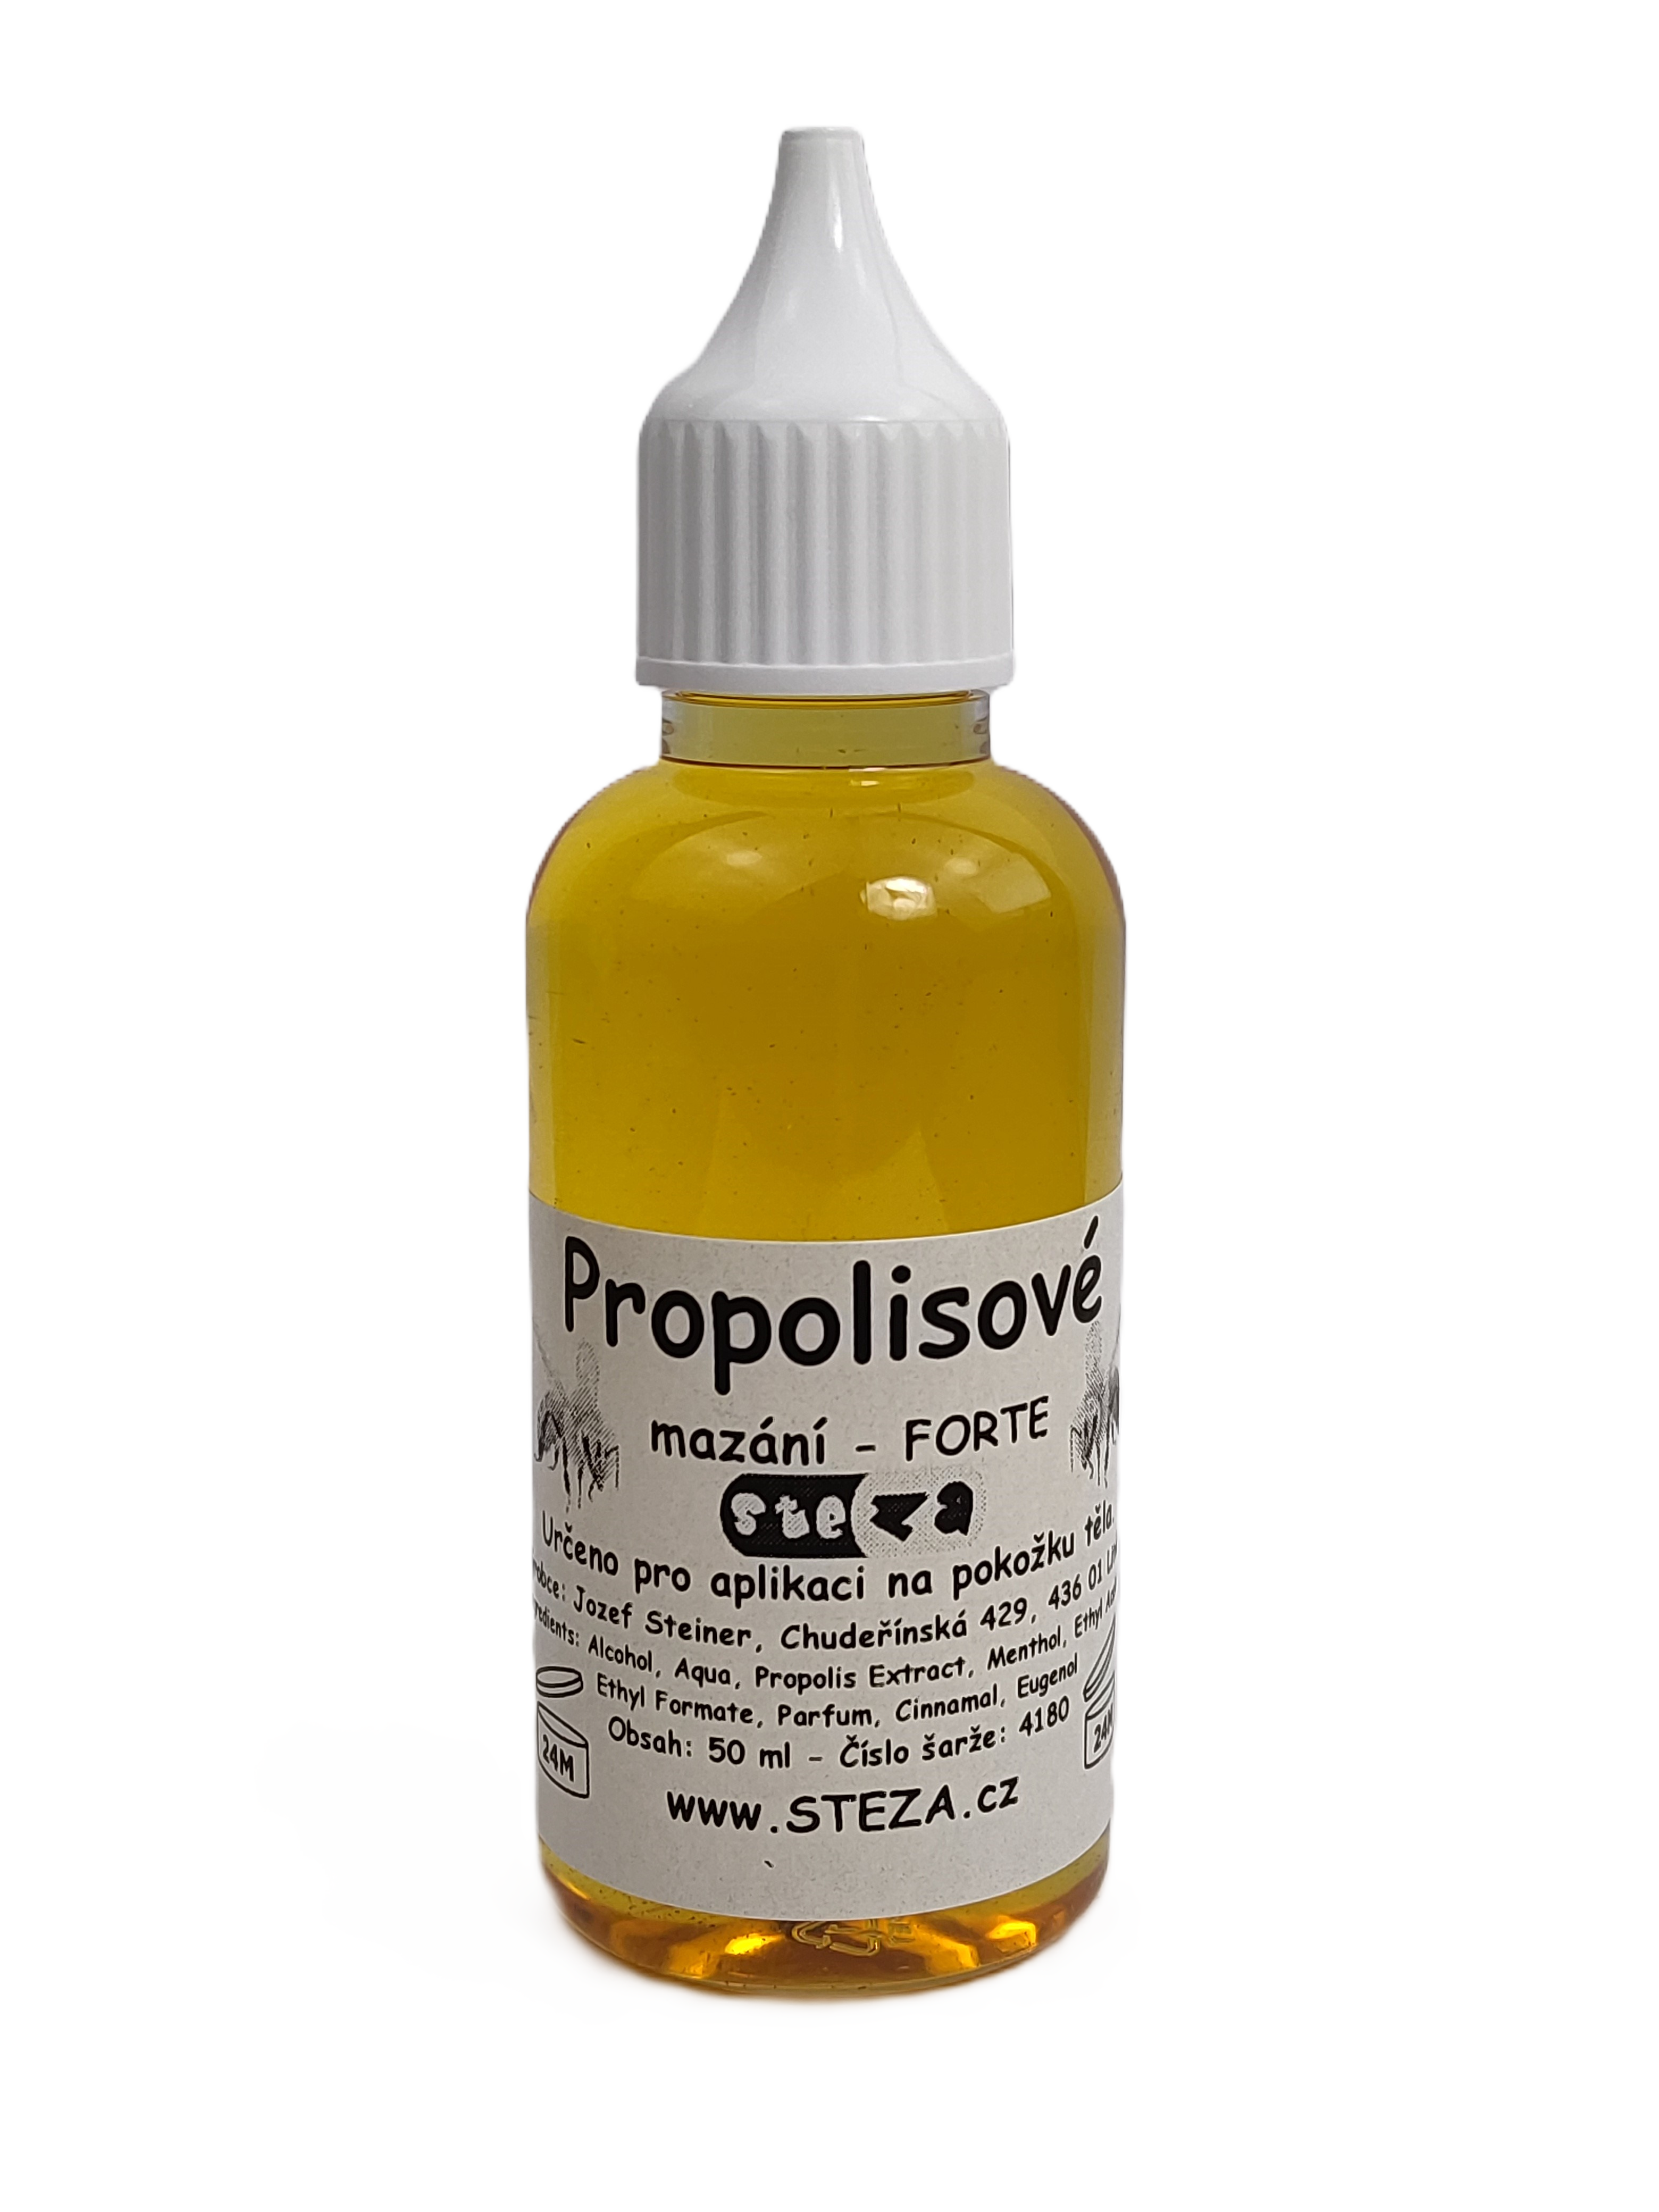 STEZA - Propolisové mazání - FORTE 5x 50 ml. (Propolisové mazání)